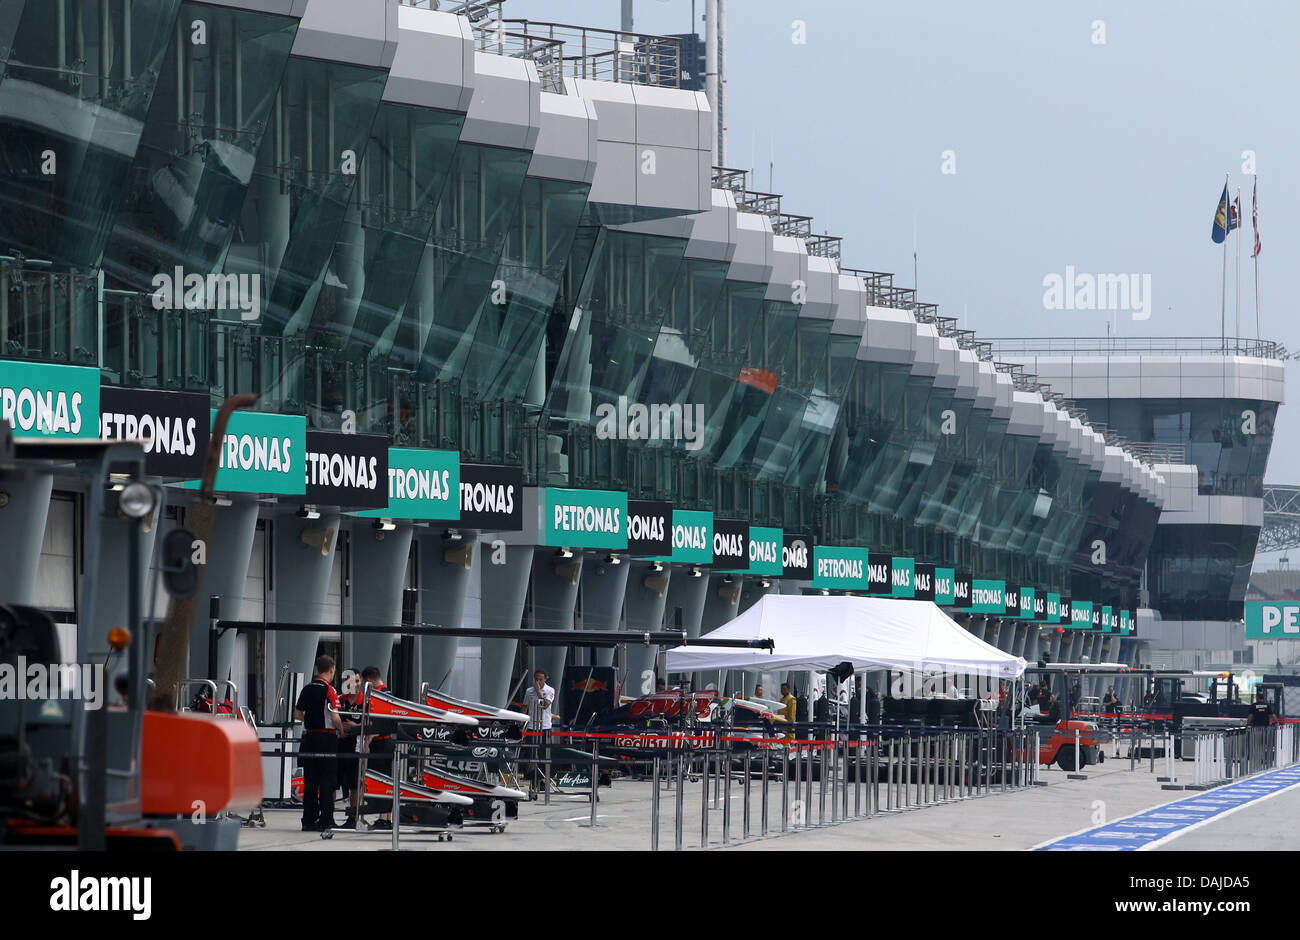 Le squadre si stanno preparando in pit lane sul circuito di Sepang al di fuori di Kuala Lumpur, Malesia, 06 aprile 2011. Il Gran Premio di Formula Uno di Malesia avrà luogo il 10 aprile 2011. Foto: Jens Buettner Foto Stock